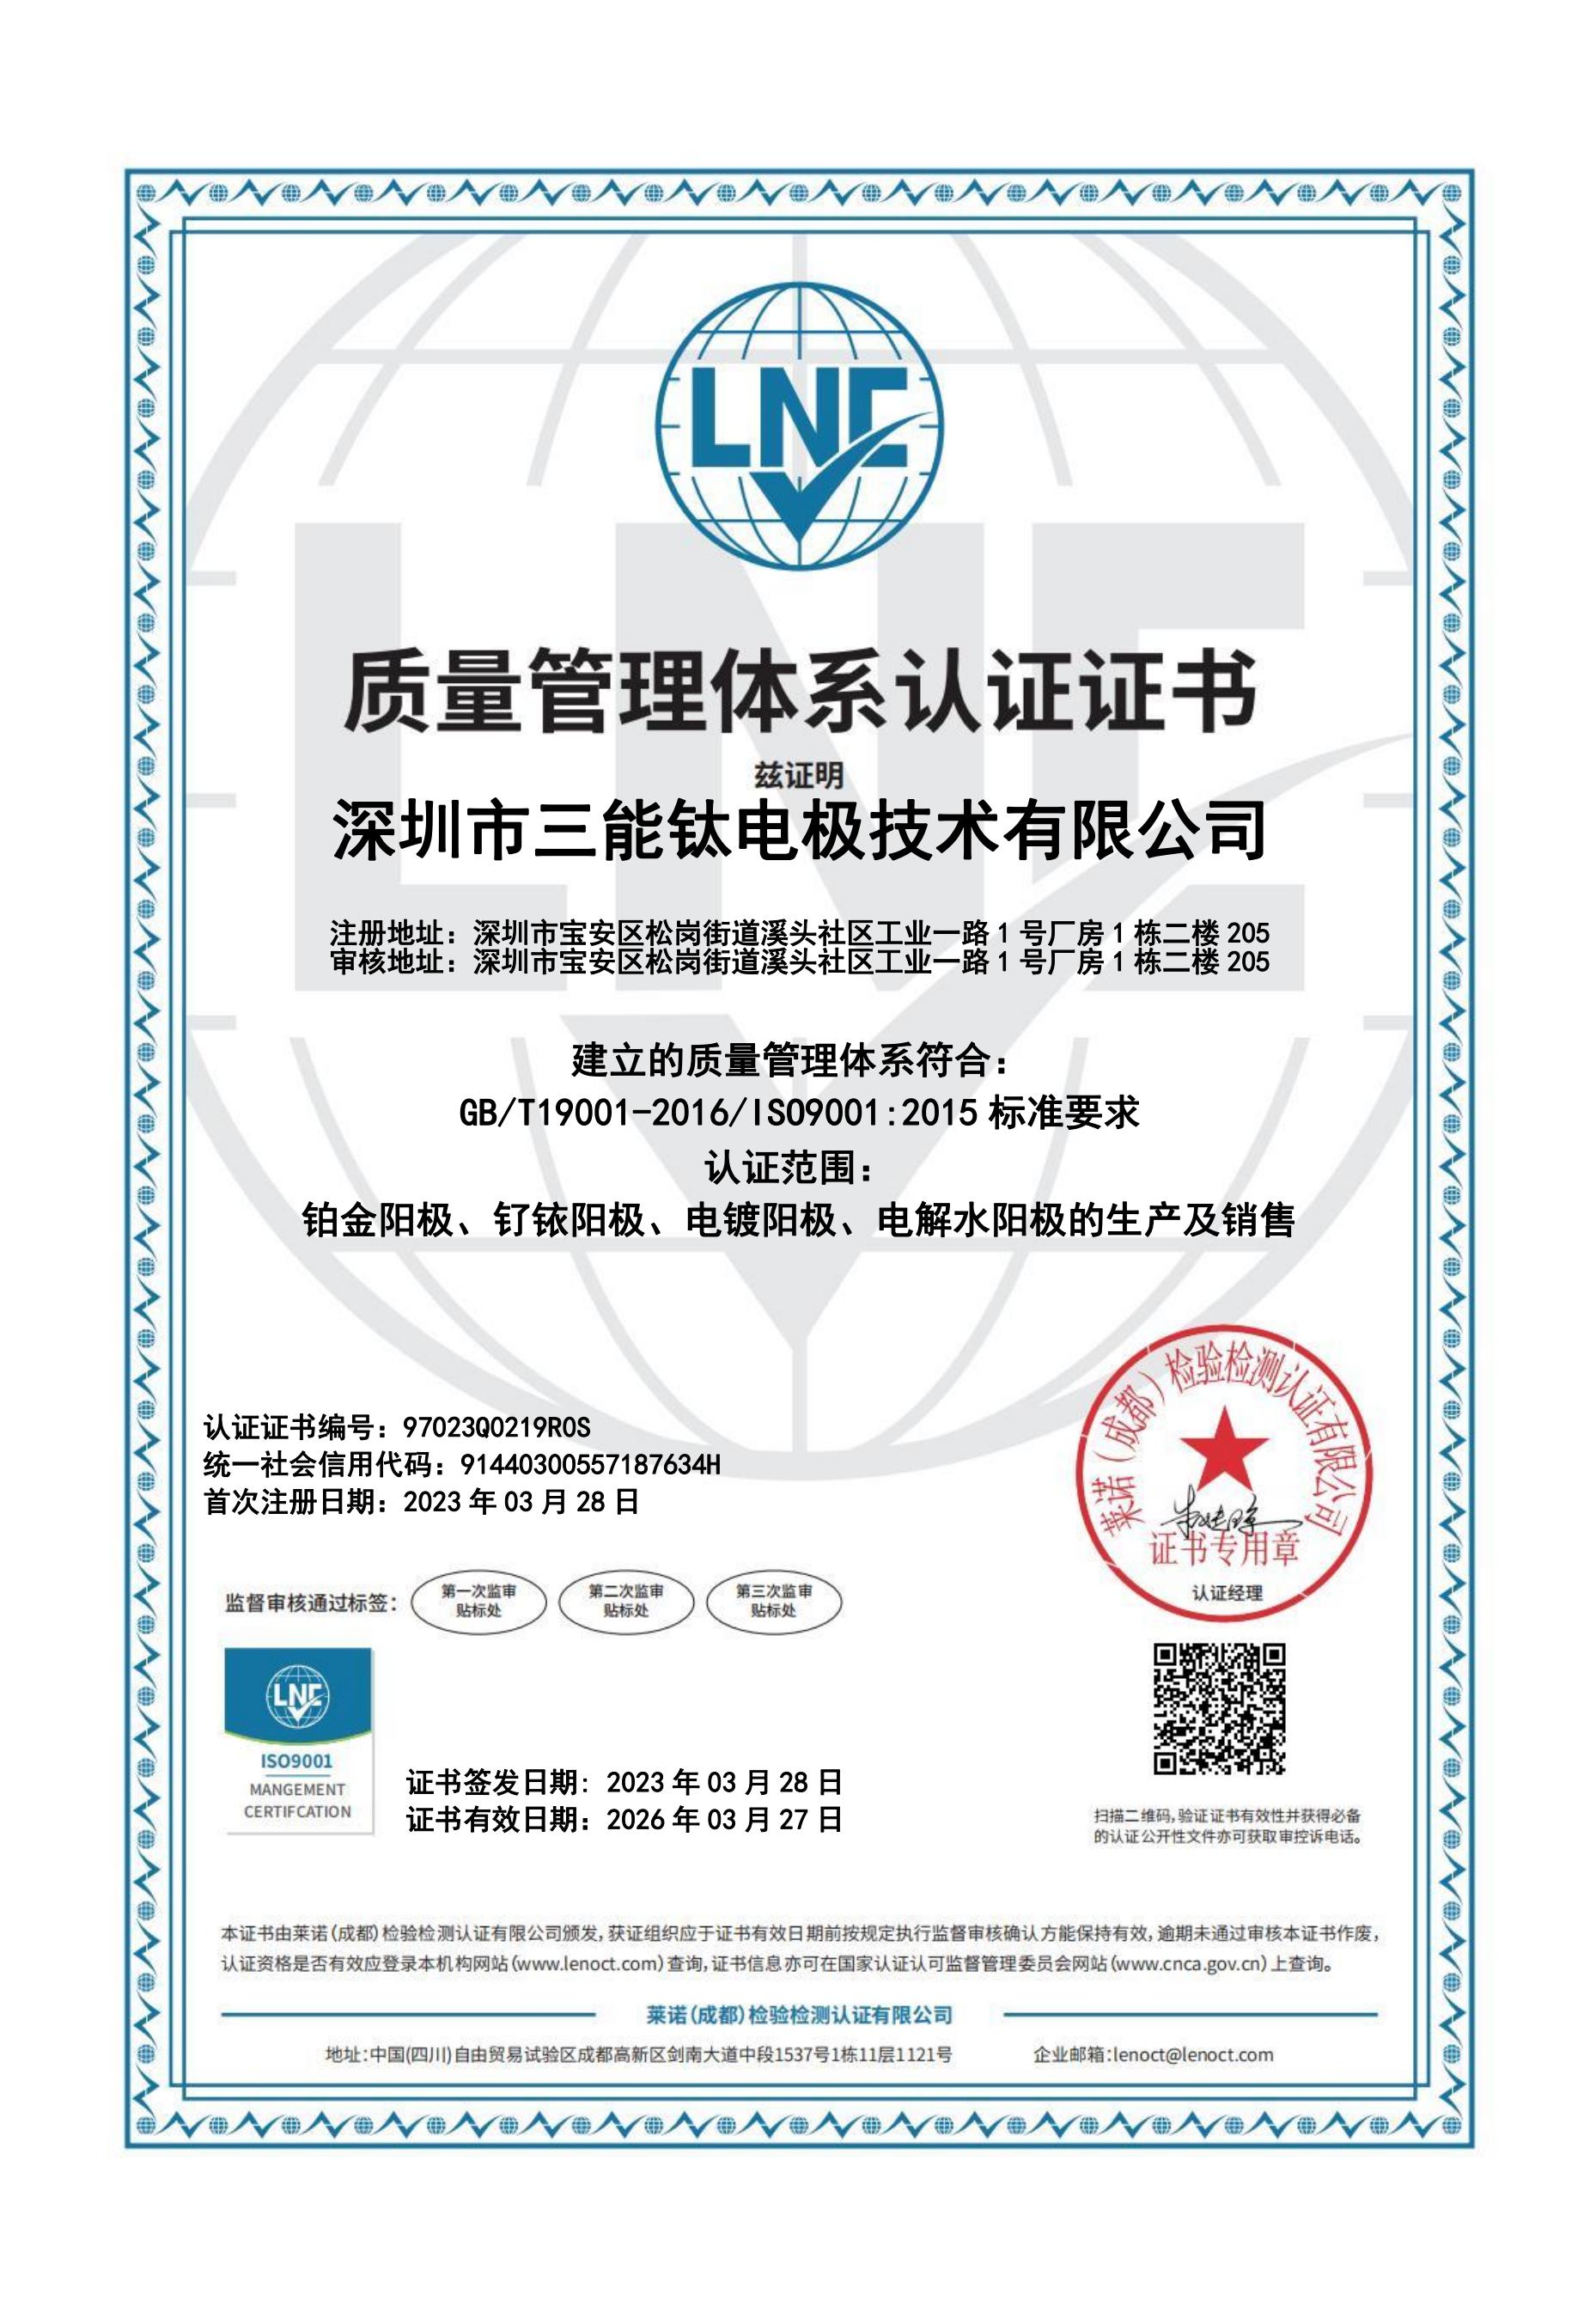 深圳市三能钛电极技术有限公司取得ISO900001质量管理体系认证